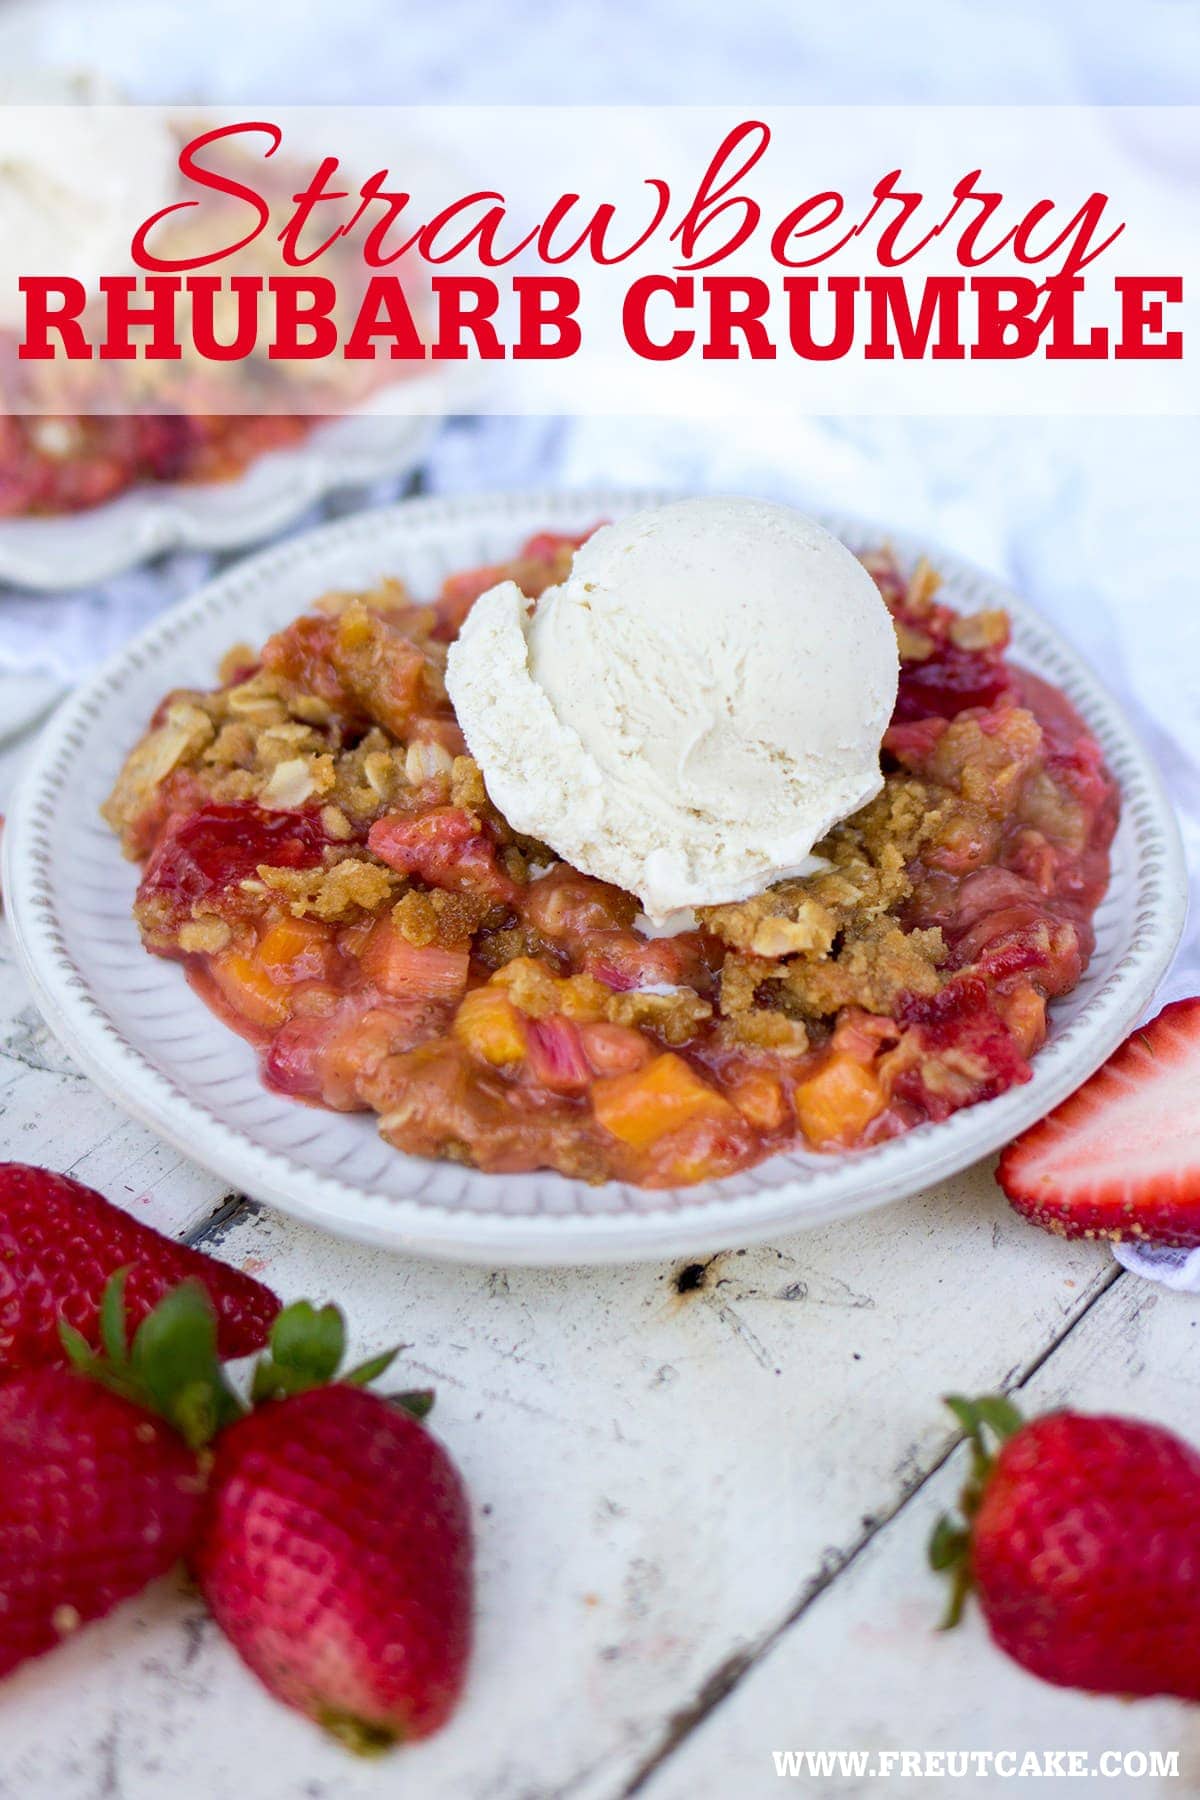 Strawberry Rhubarb Crumble